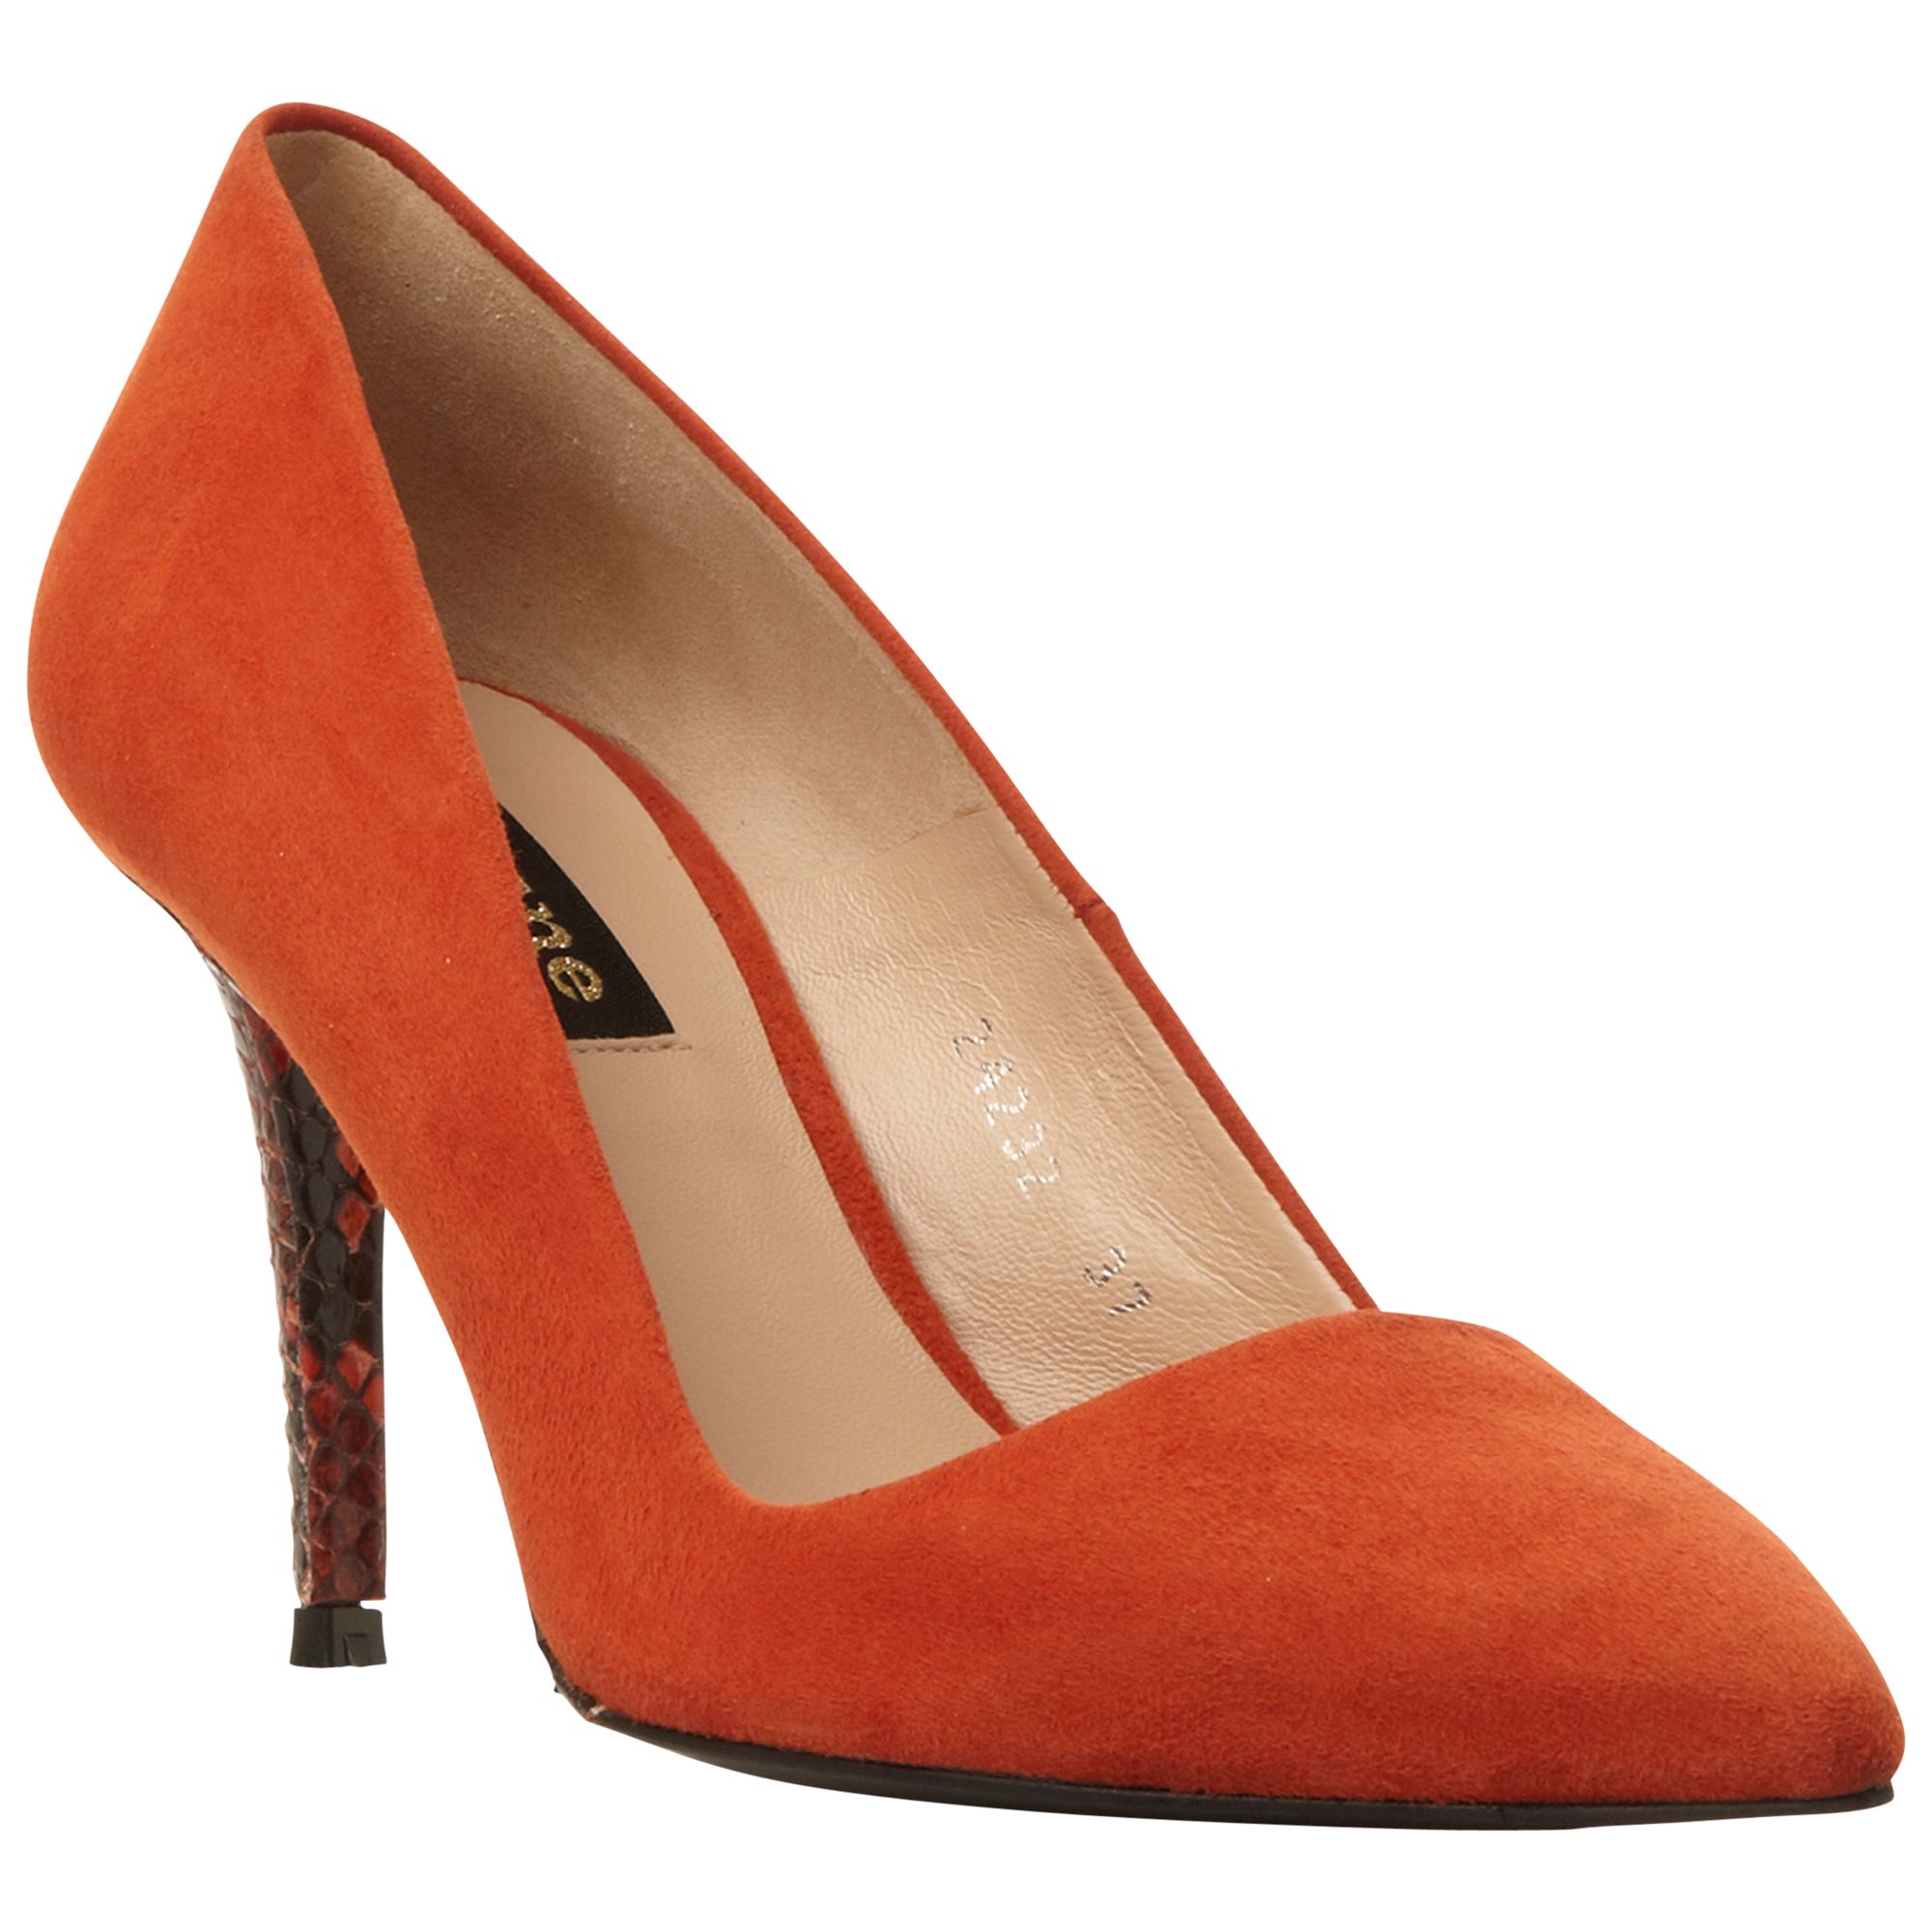 orange high heels women's shoes